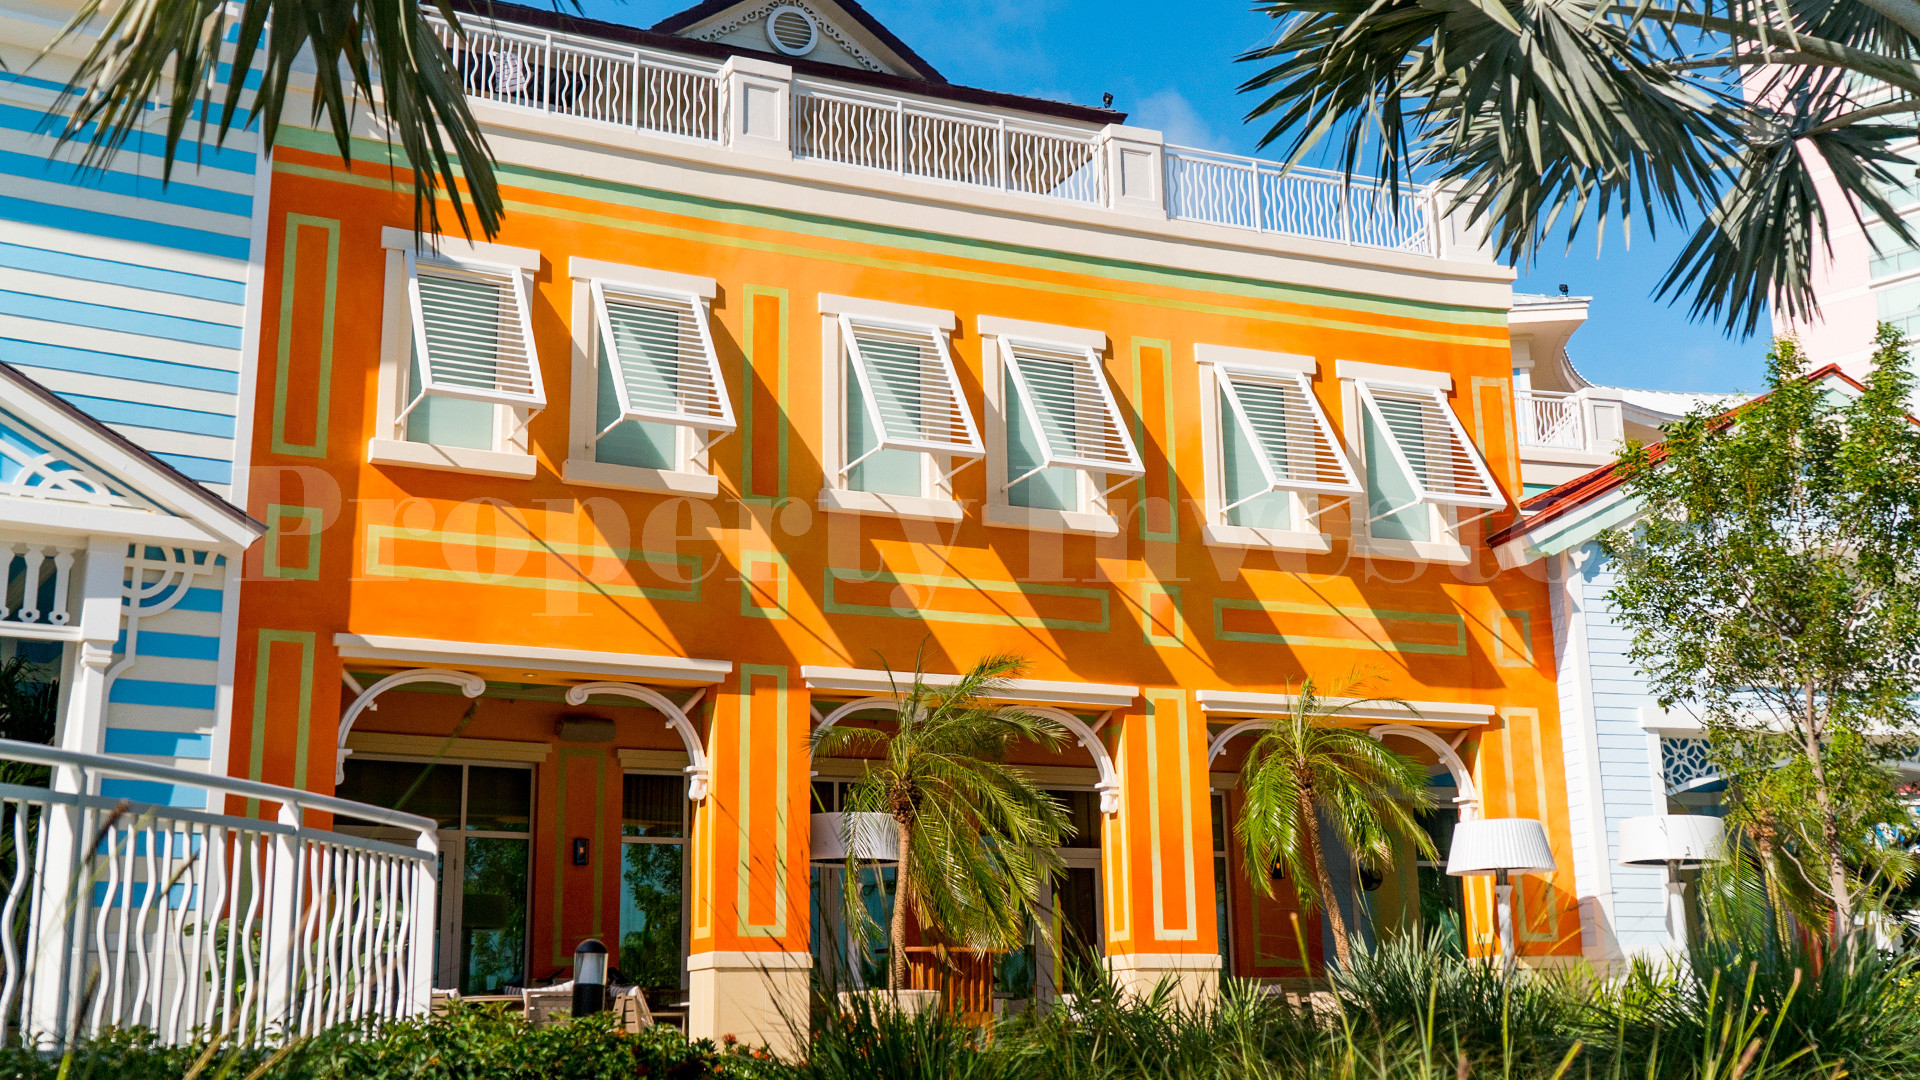 2 Bedroom Condo-Hotel Suite in the Bahamas (Suite 513)